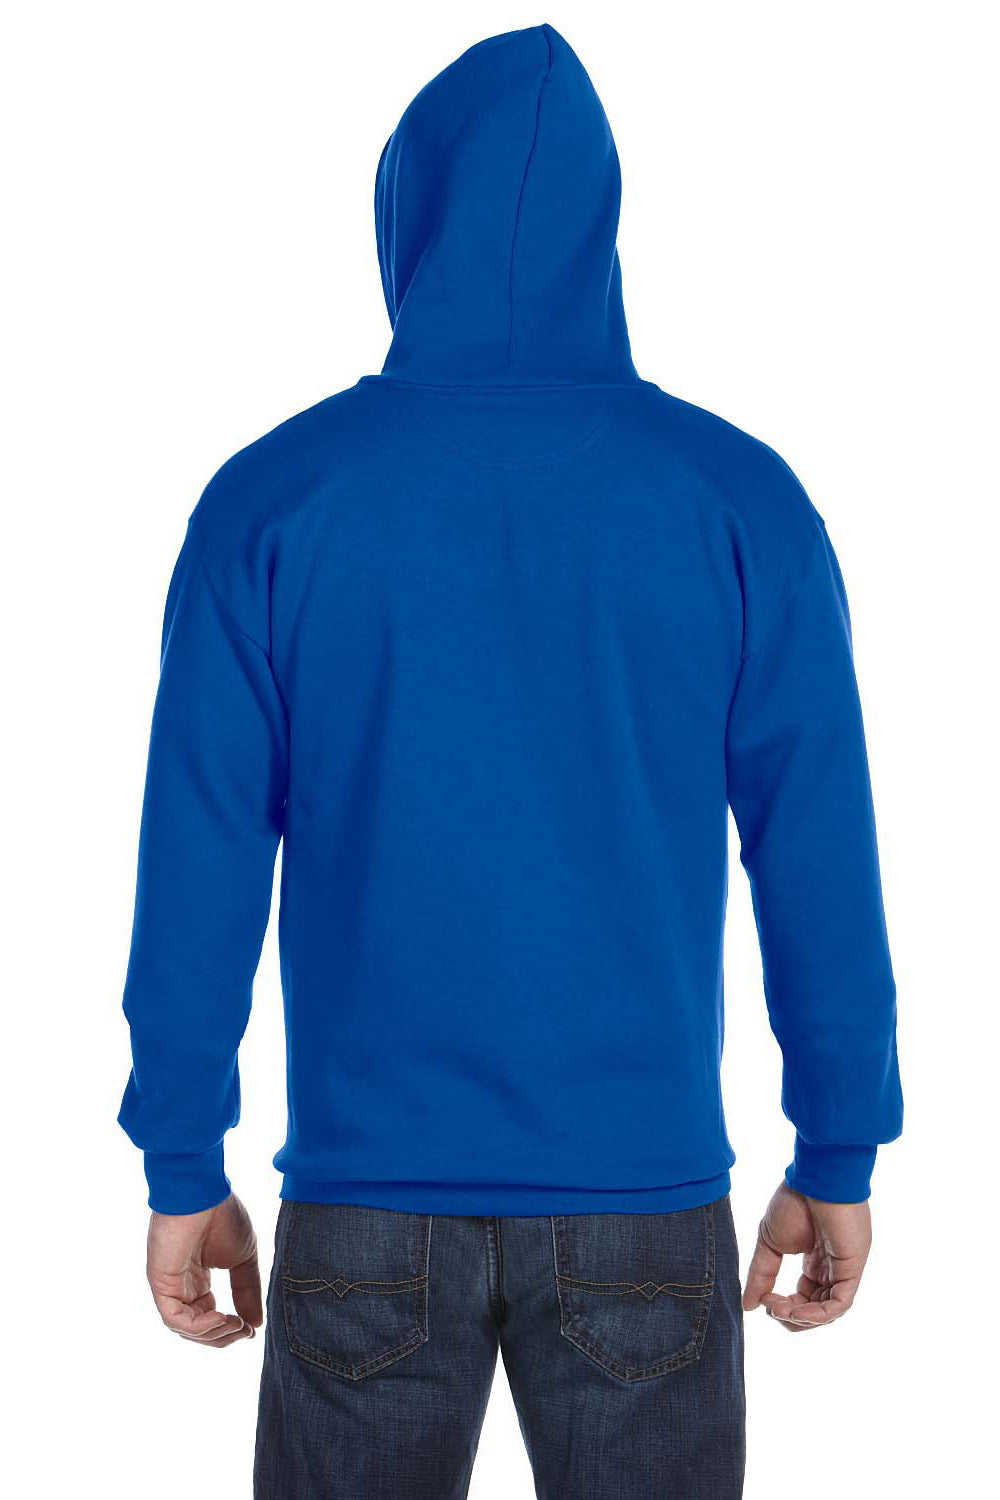 Anvil 71600 Mens Fleece Full Zip Hooded Sweatshirt Hoodie Royal Blue Back